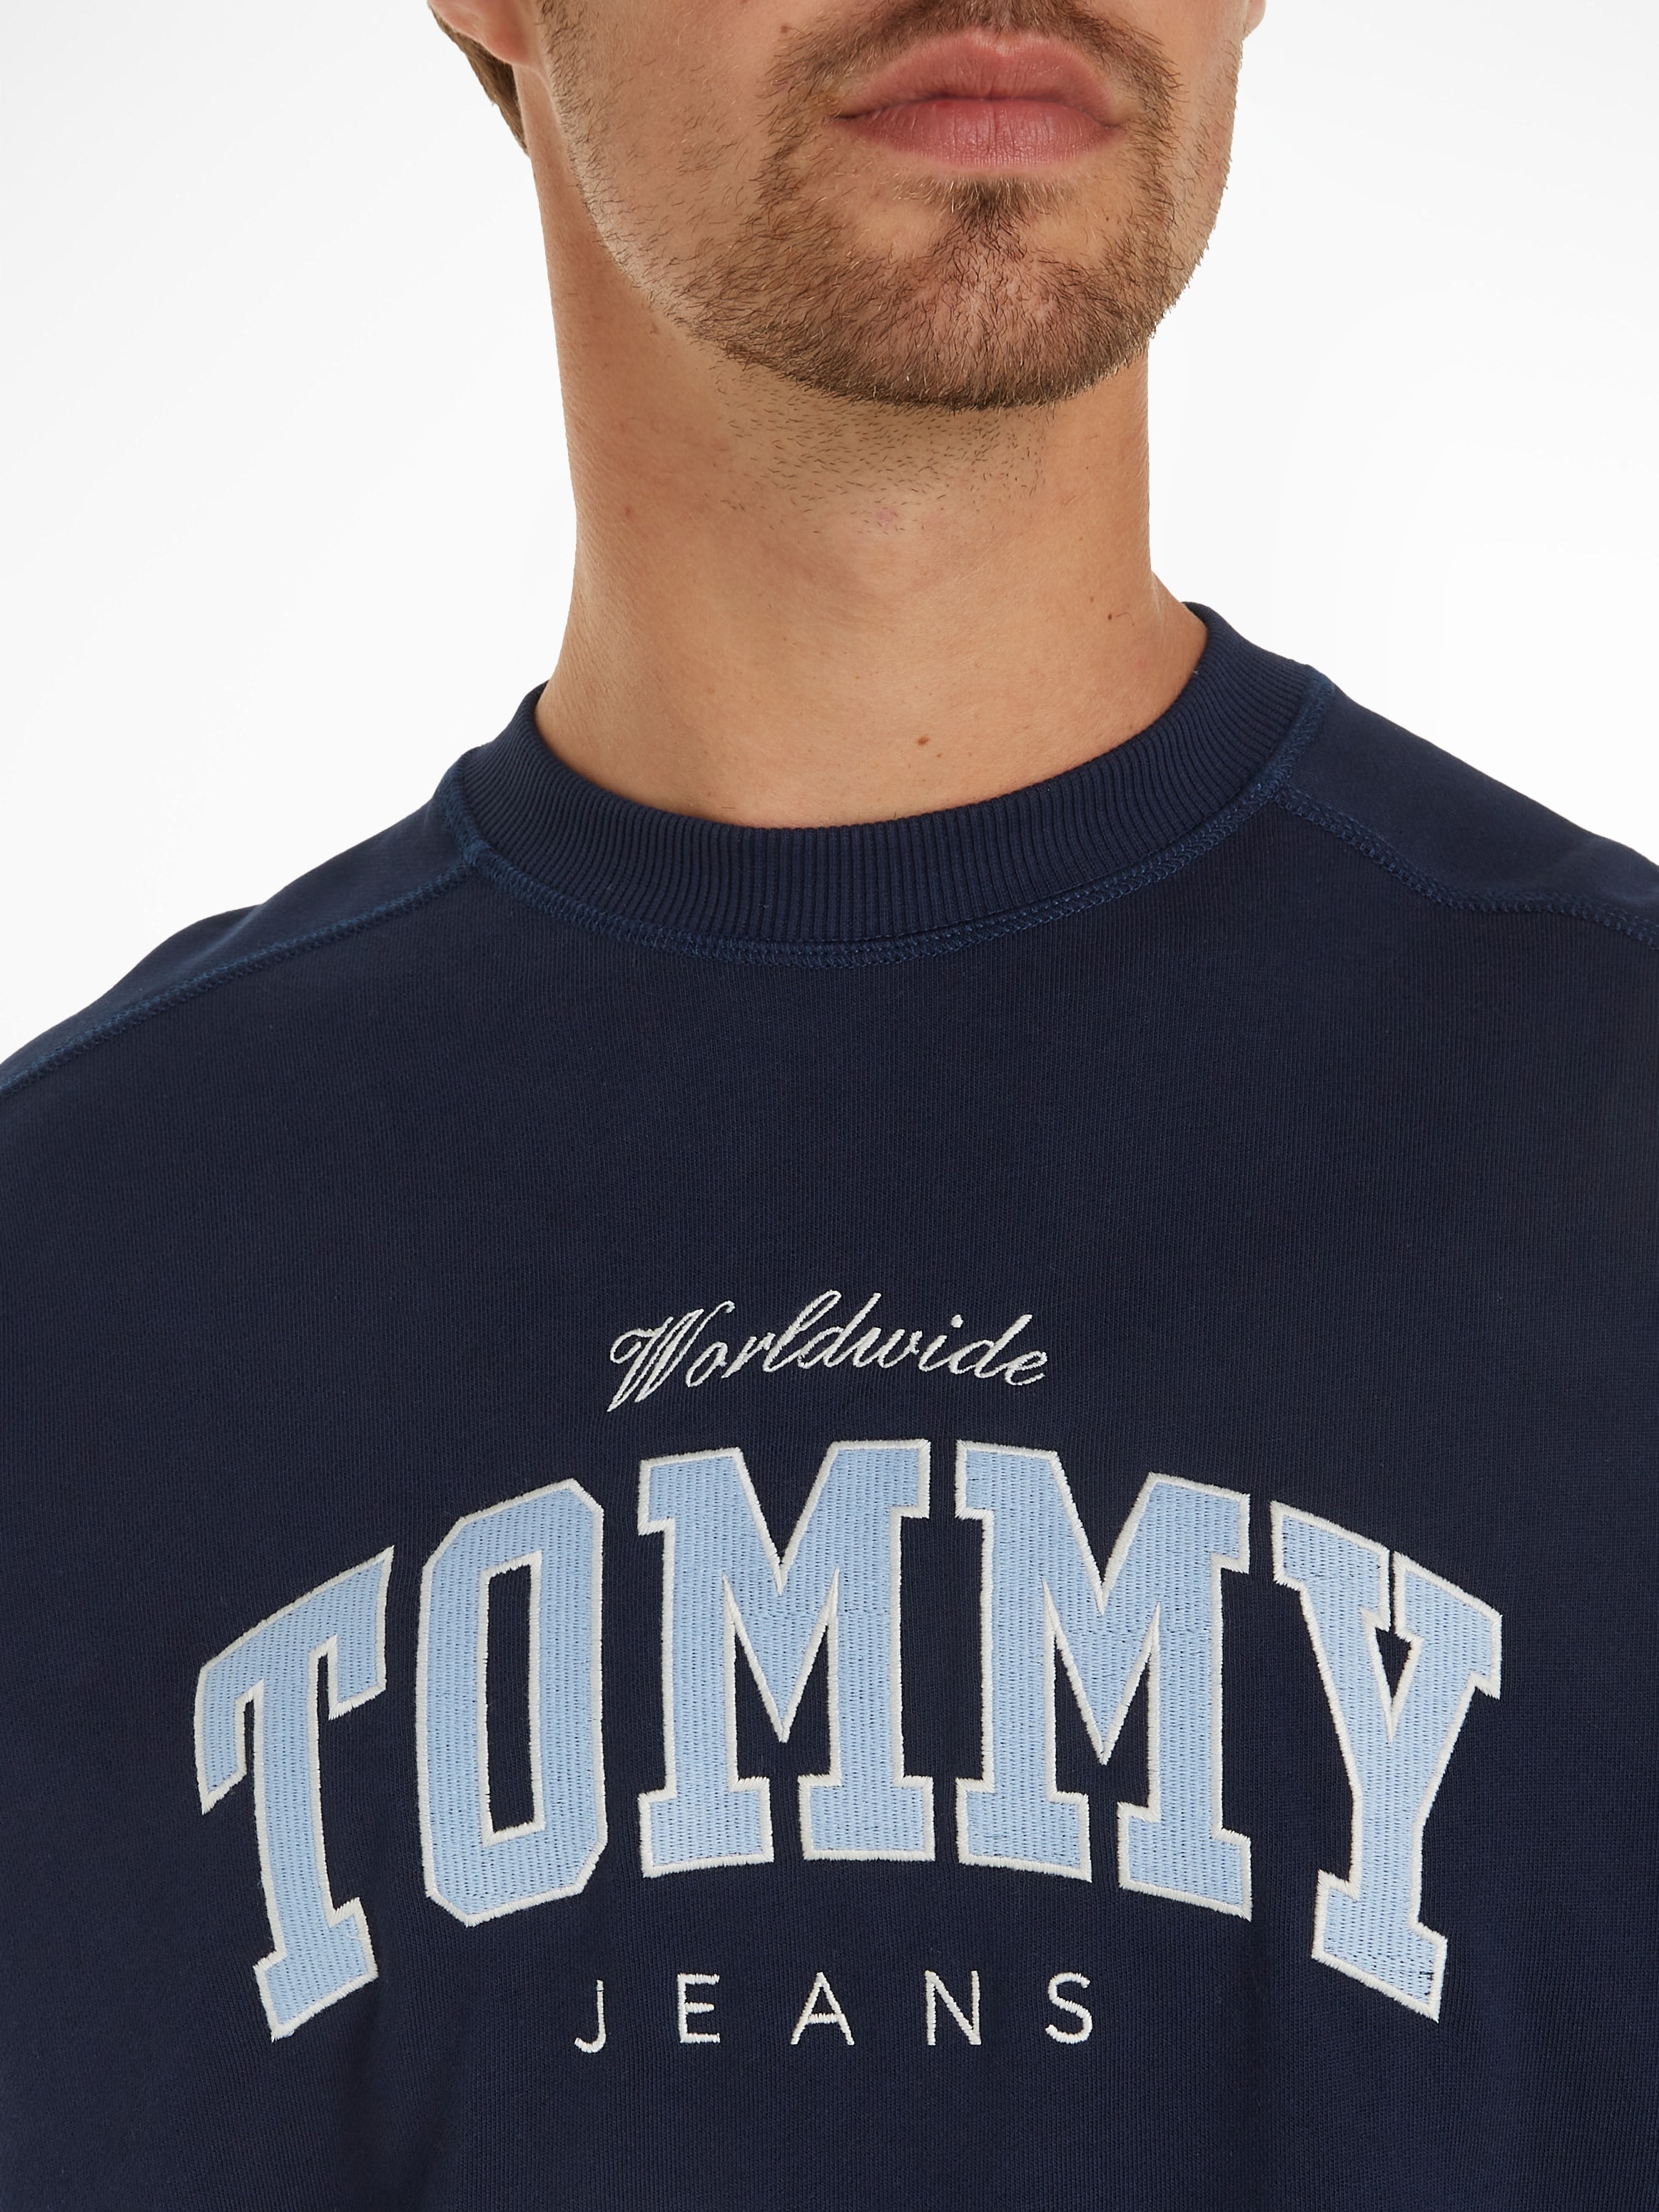 Tommy Jeans Sweatshirt »TJM BOXY VARSITY CREW EXT«